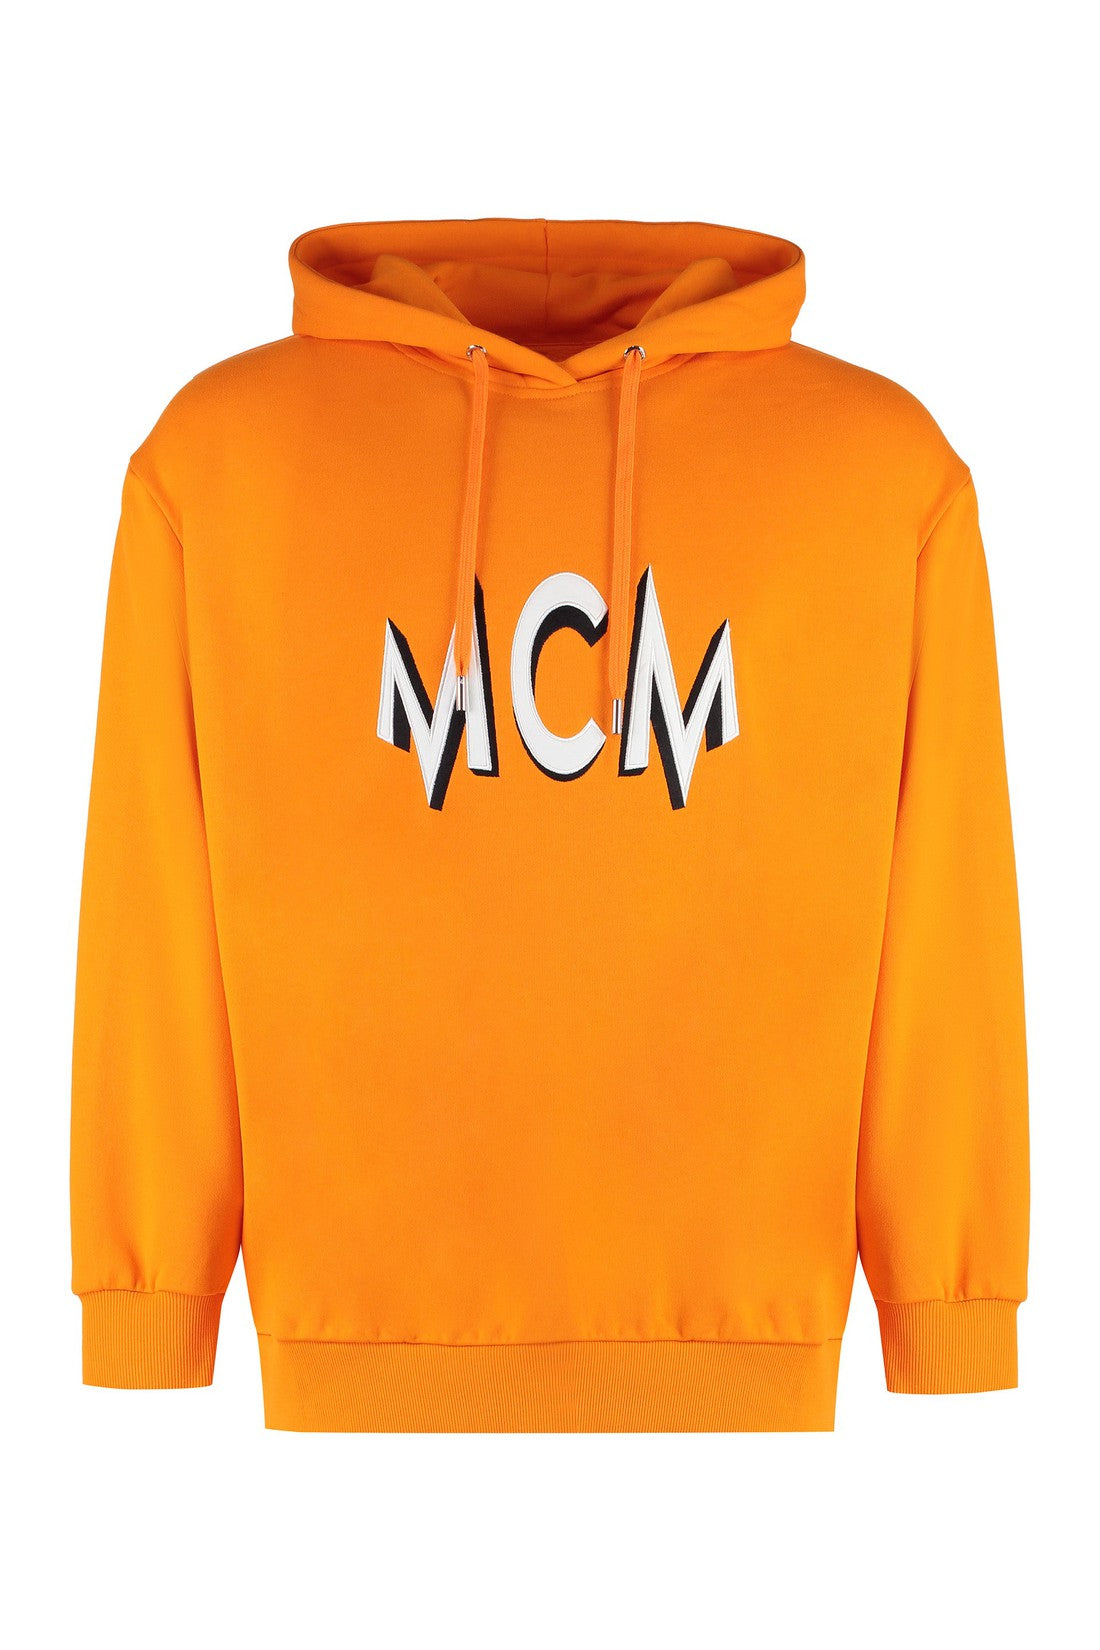 MCM-OUTLET-SALE-Cotton hoodie-ARCHIVIST